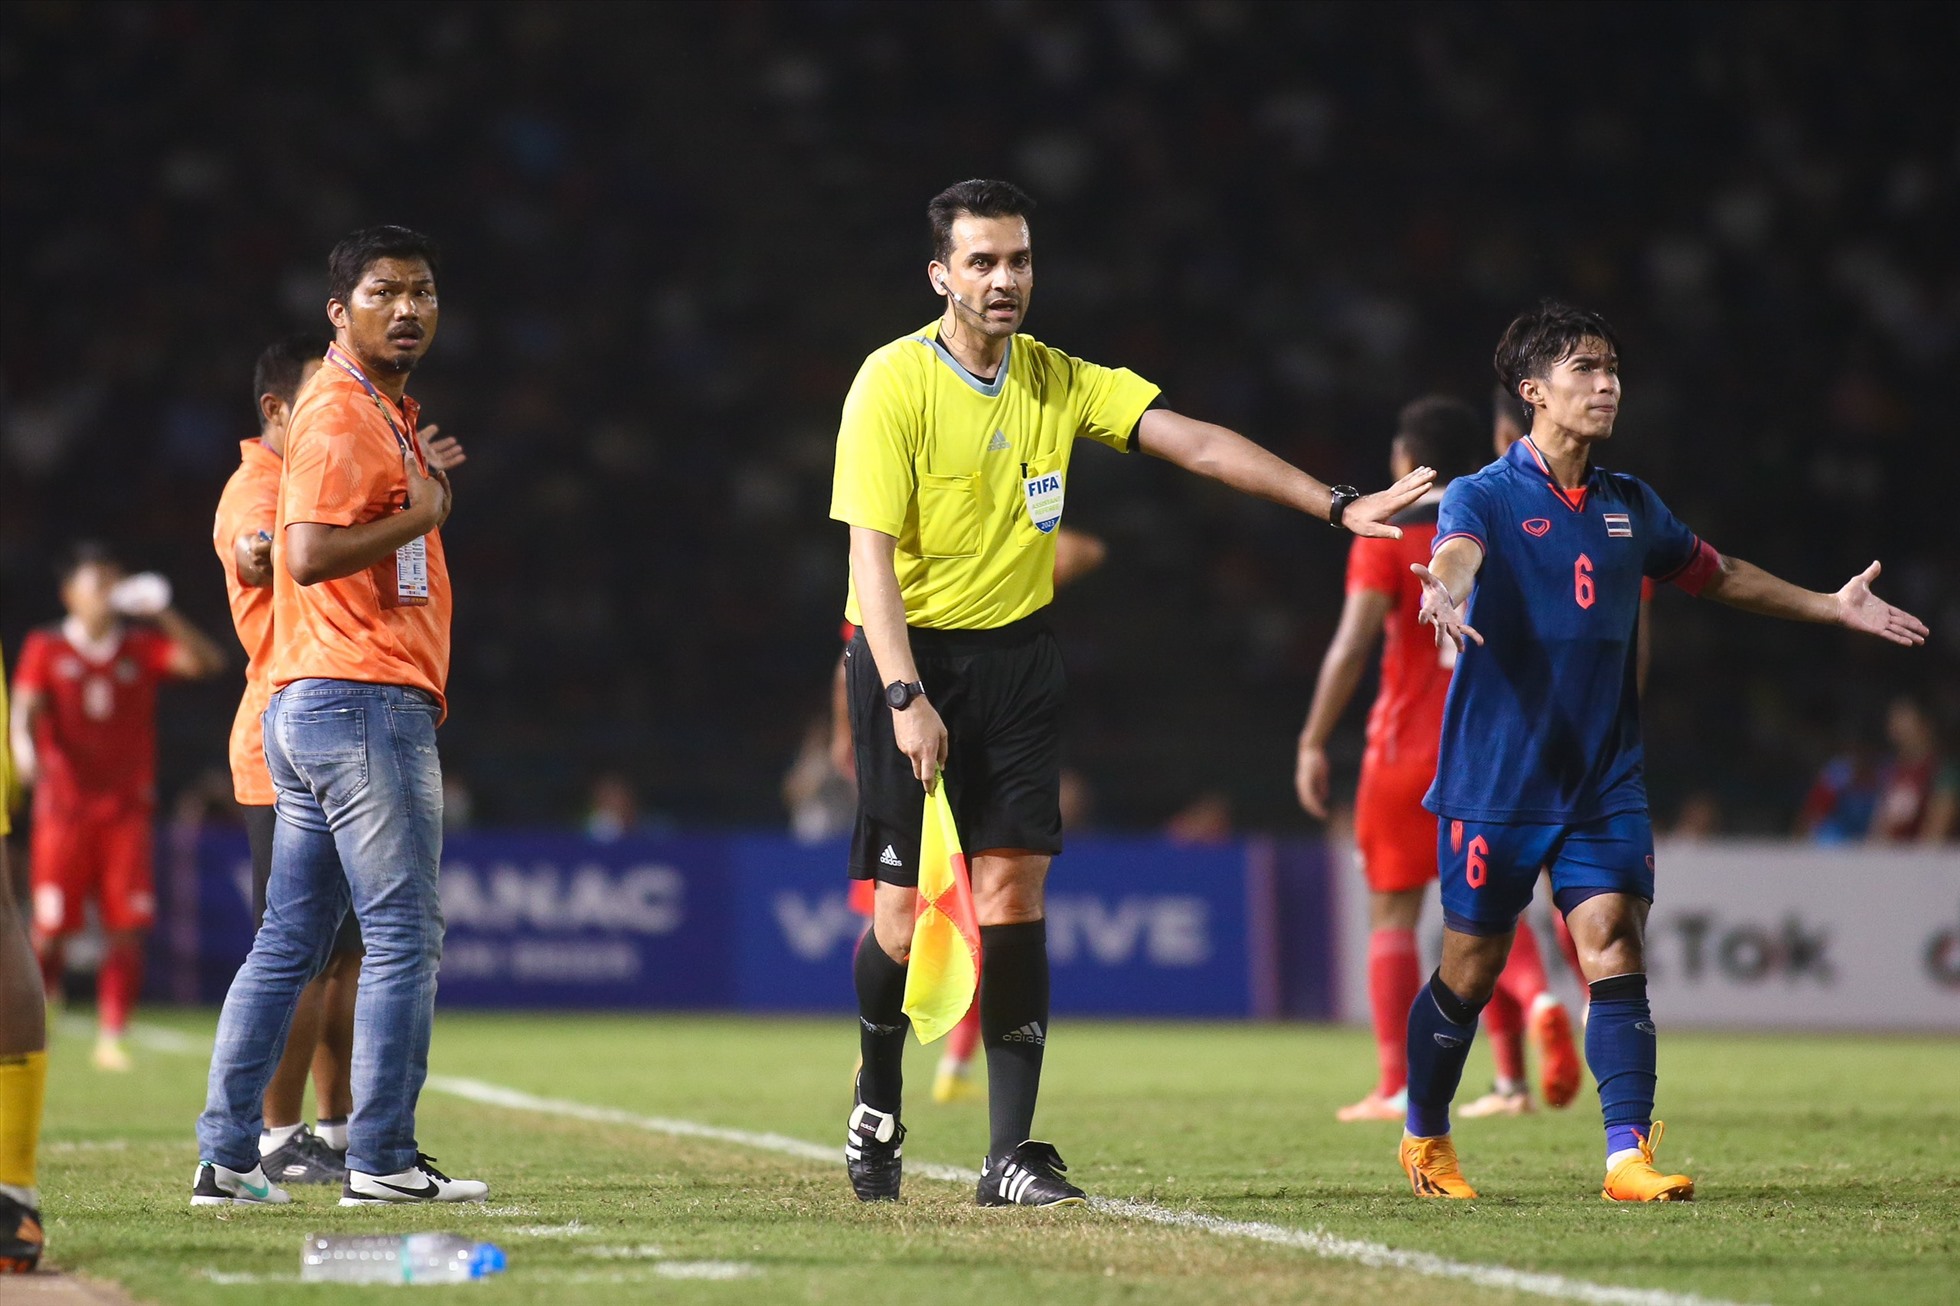 Sanata chớp thời cơ để ghi bàn, trong khi ban huấn luyện và cầu thủ U22 Thái Lan phản đối quyết định của trọng tài khi đã hết thời gian bù giờ. Ảnh: Thanh Vũ